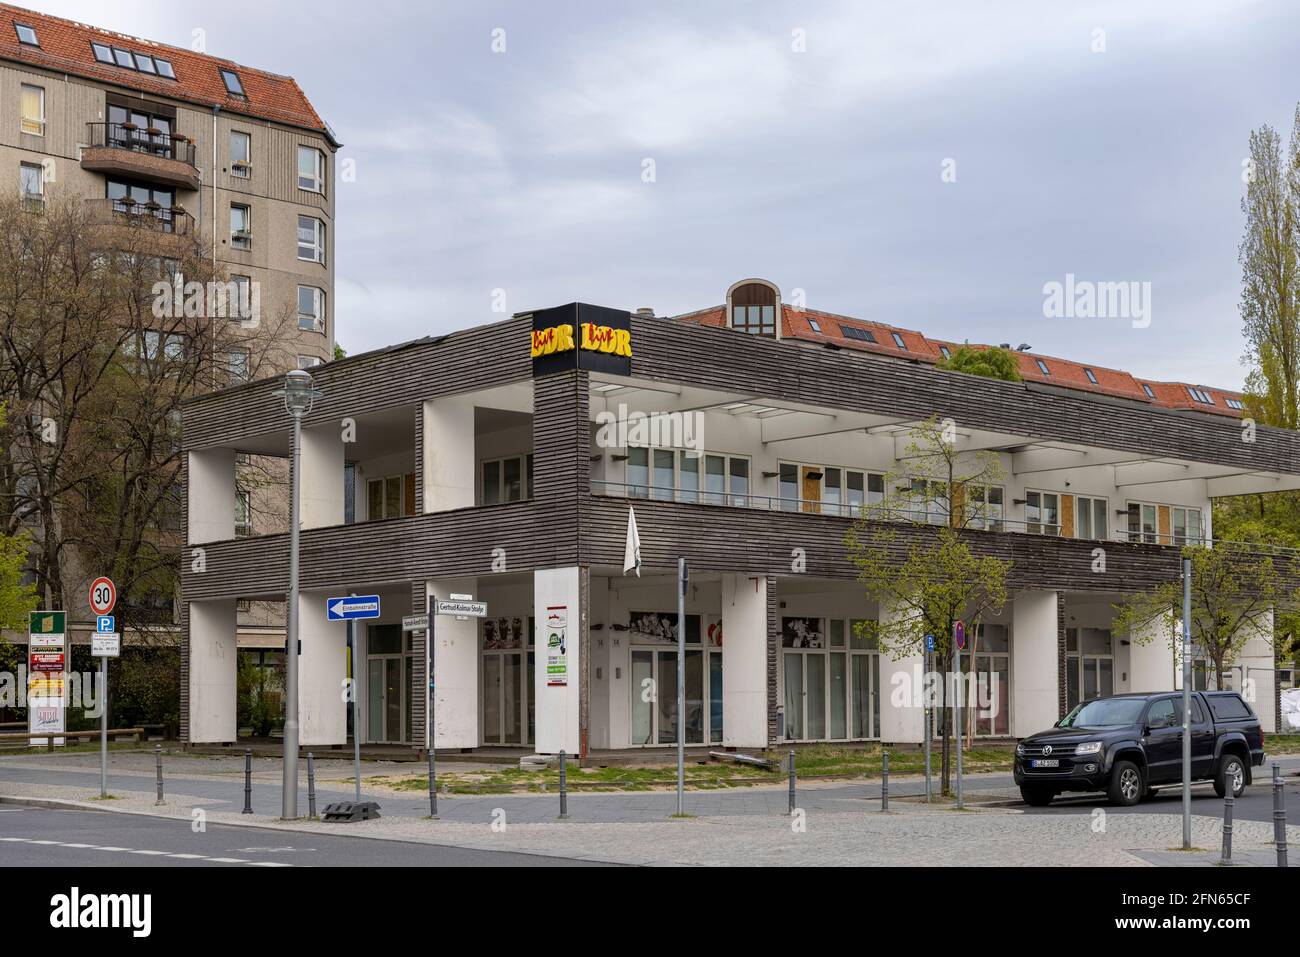 Berlino era la capitale della Germania orientale. La città ha ancora un 'Museo del DDR' per mostrare la vita nell'ex Germania dell'Est. Foto Stock